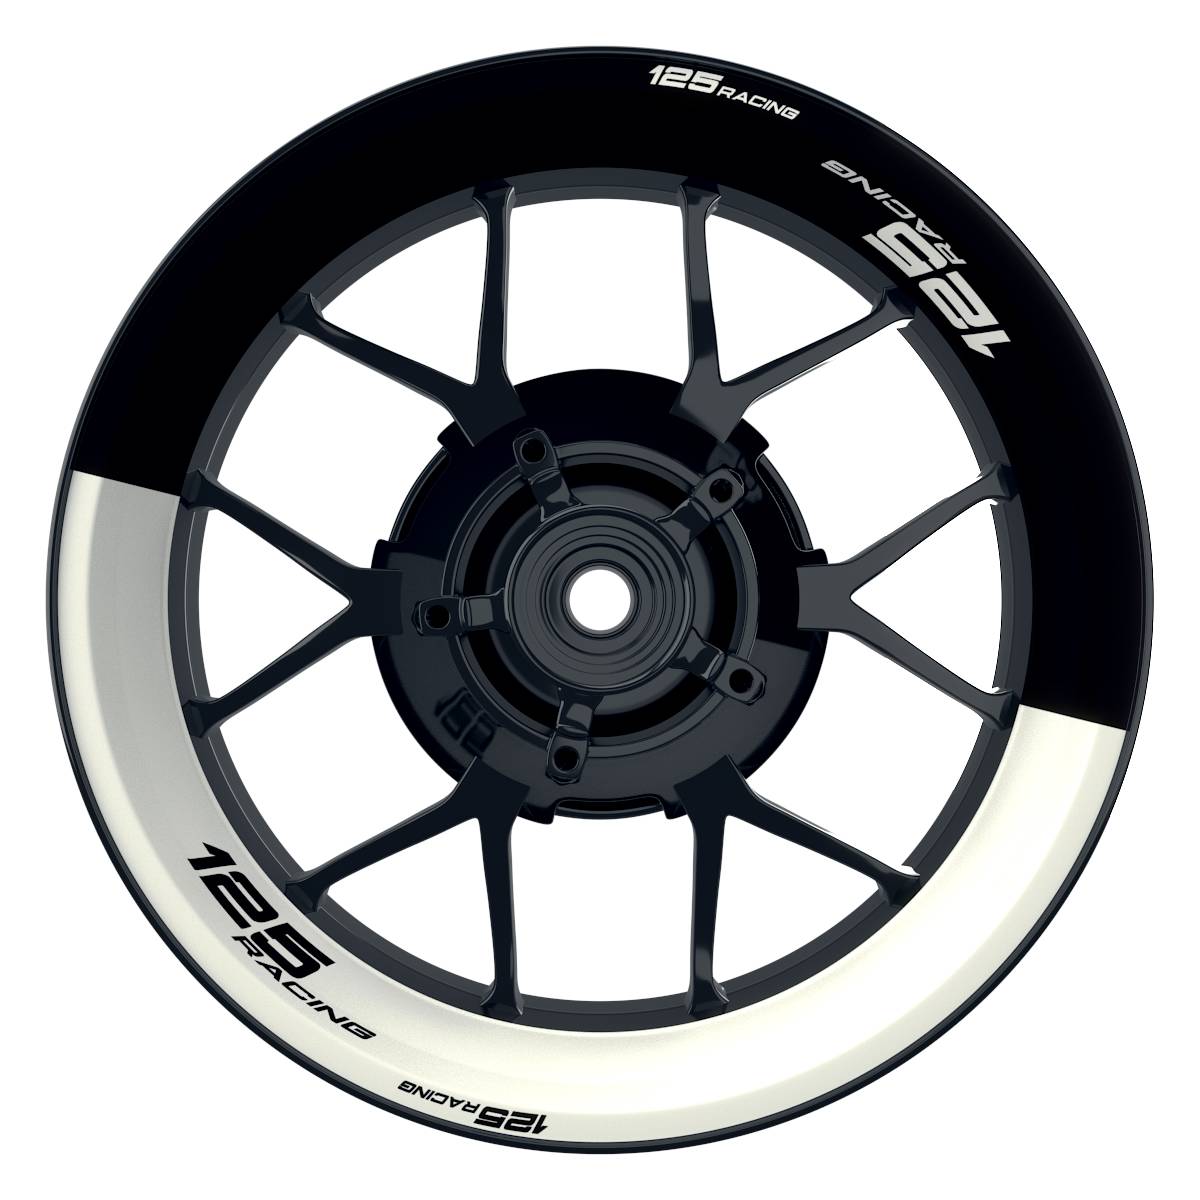 KTM 125RACING Halb halb schwarz weiss Wheelsticker Felgenaufkleber